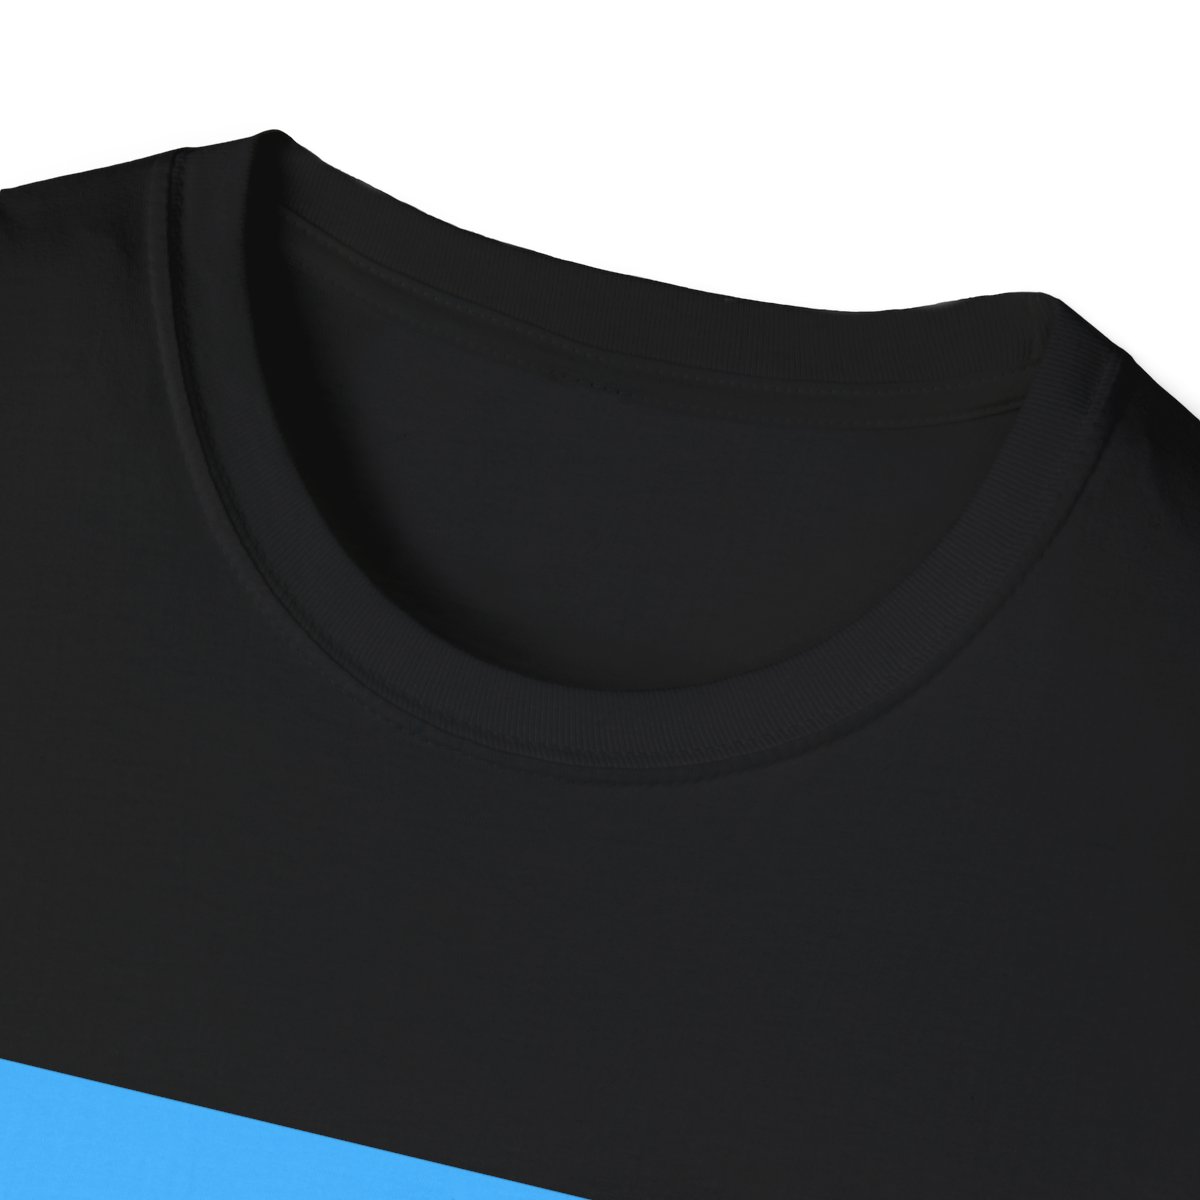 Unisex Softstyle T-Shirt product thumbnail image